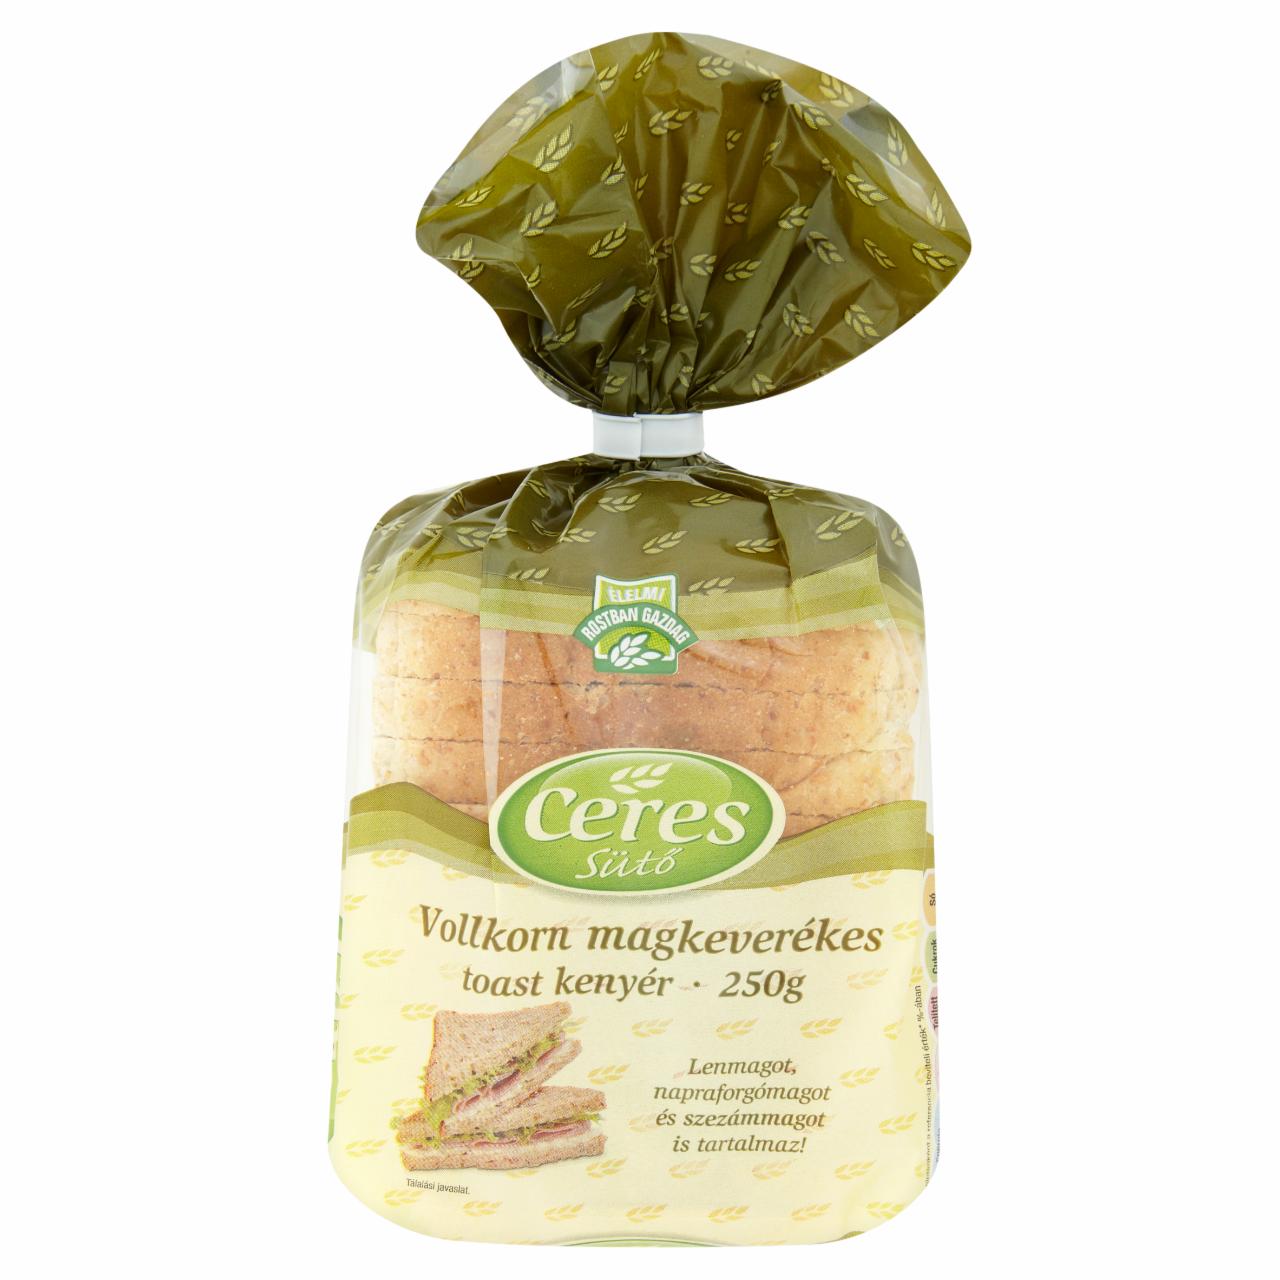 Képek - Ceres Sütő Vollkorn magkeverékes toast kenyér 250 g